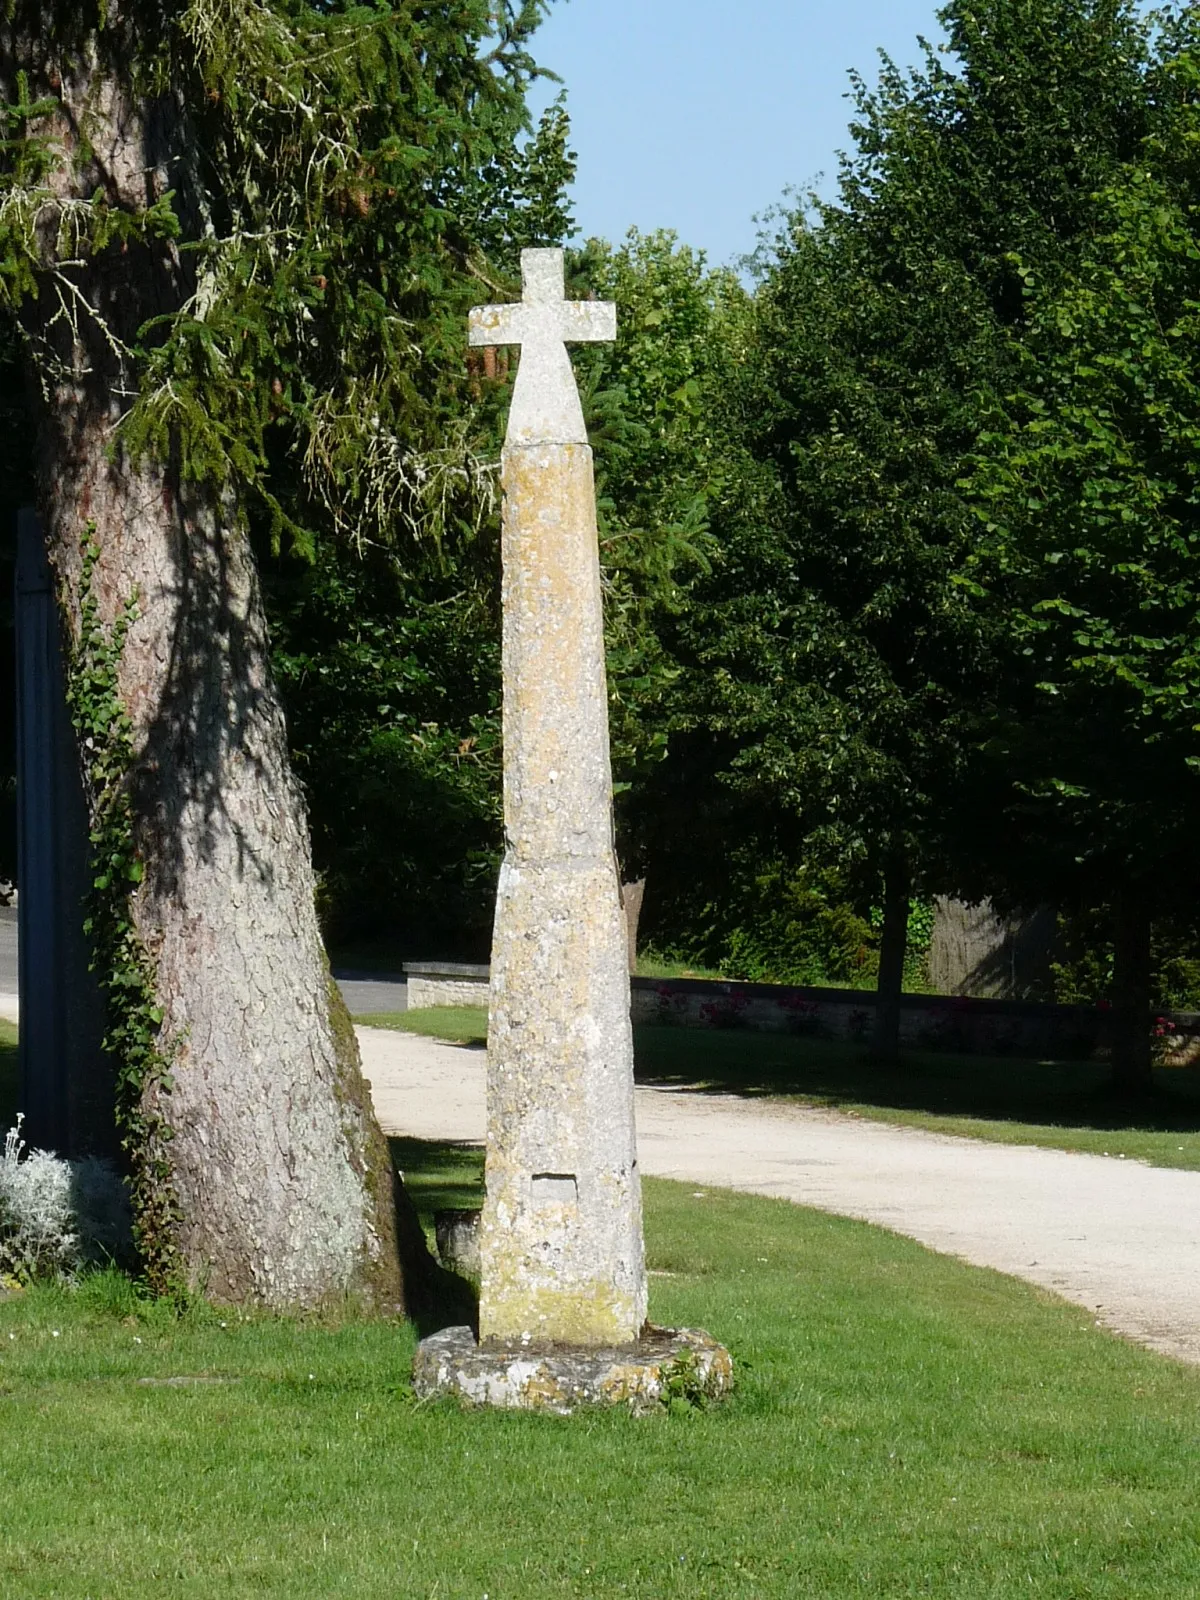 Photo showing: Croix près de l'église, Poursac, Charente, France. Possible que ce soit une croix du chemin de St-Jacques, via Turonensis par Angoulême.